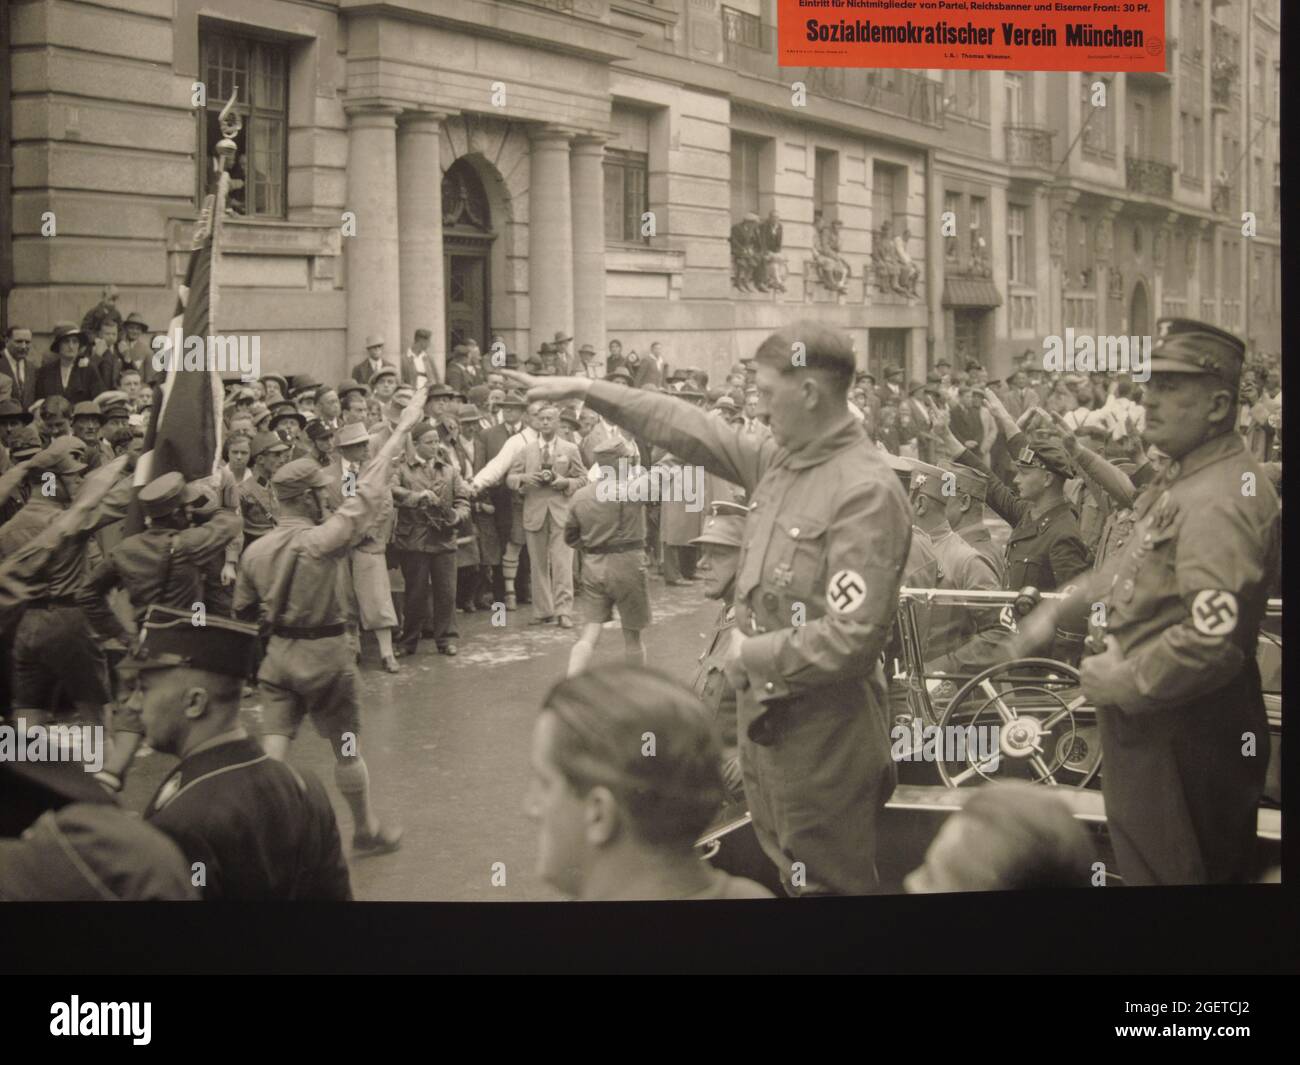 Vieux Spiegel Stern magazines, histoire de couverture holocauste à la période nazie Banque D'Images